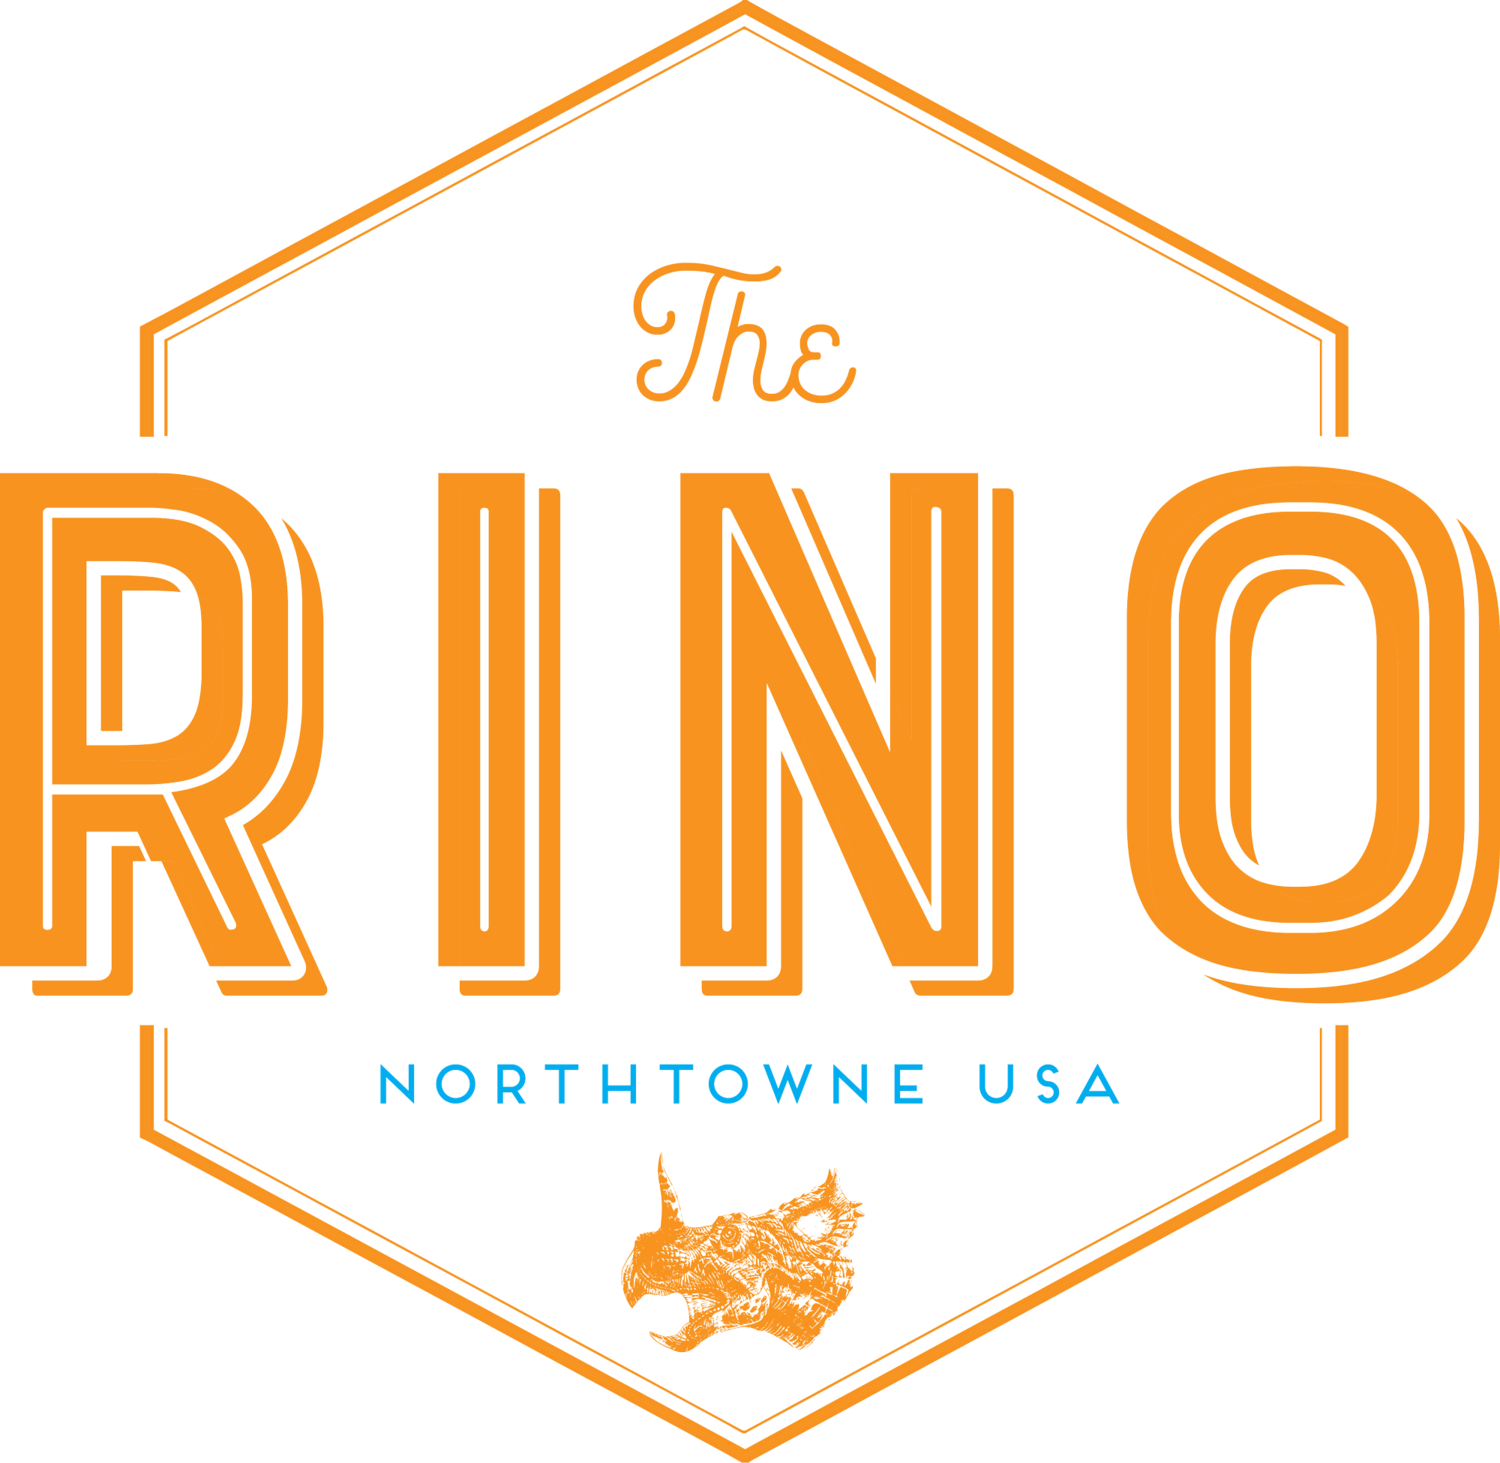 The Rino